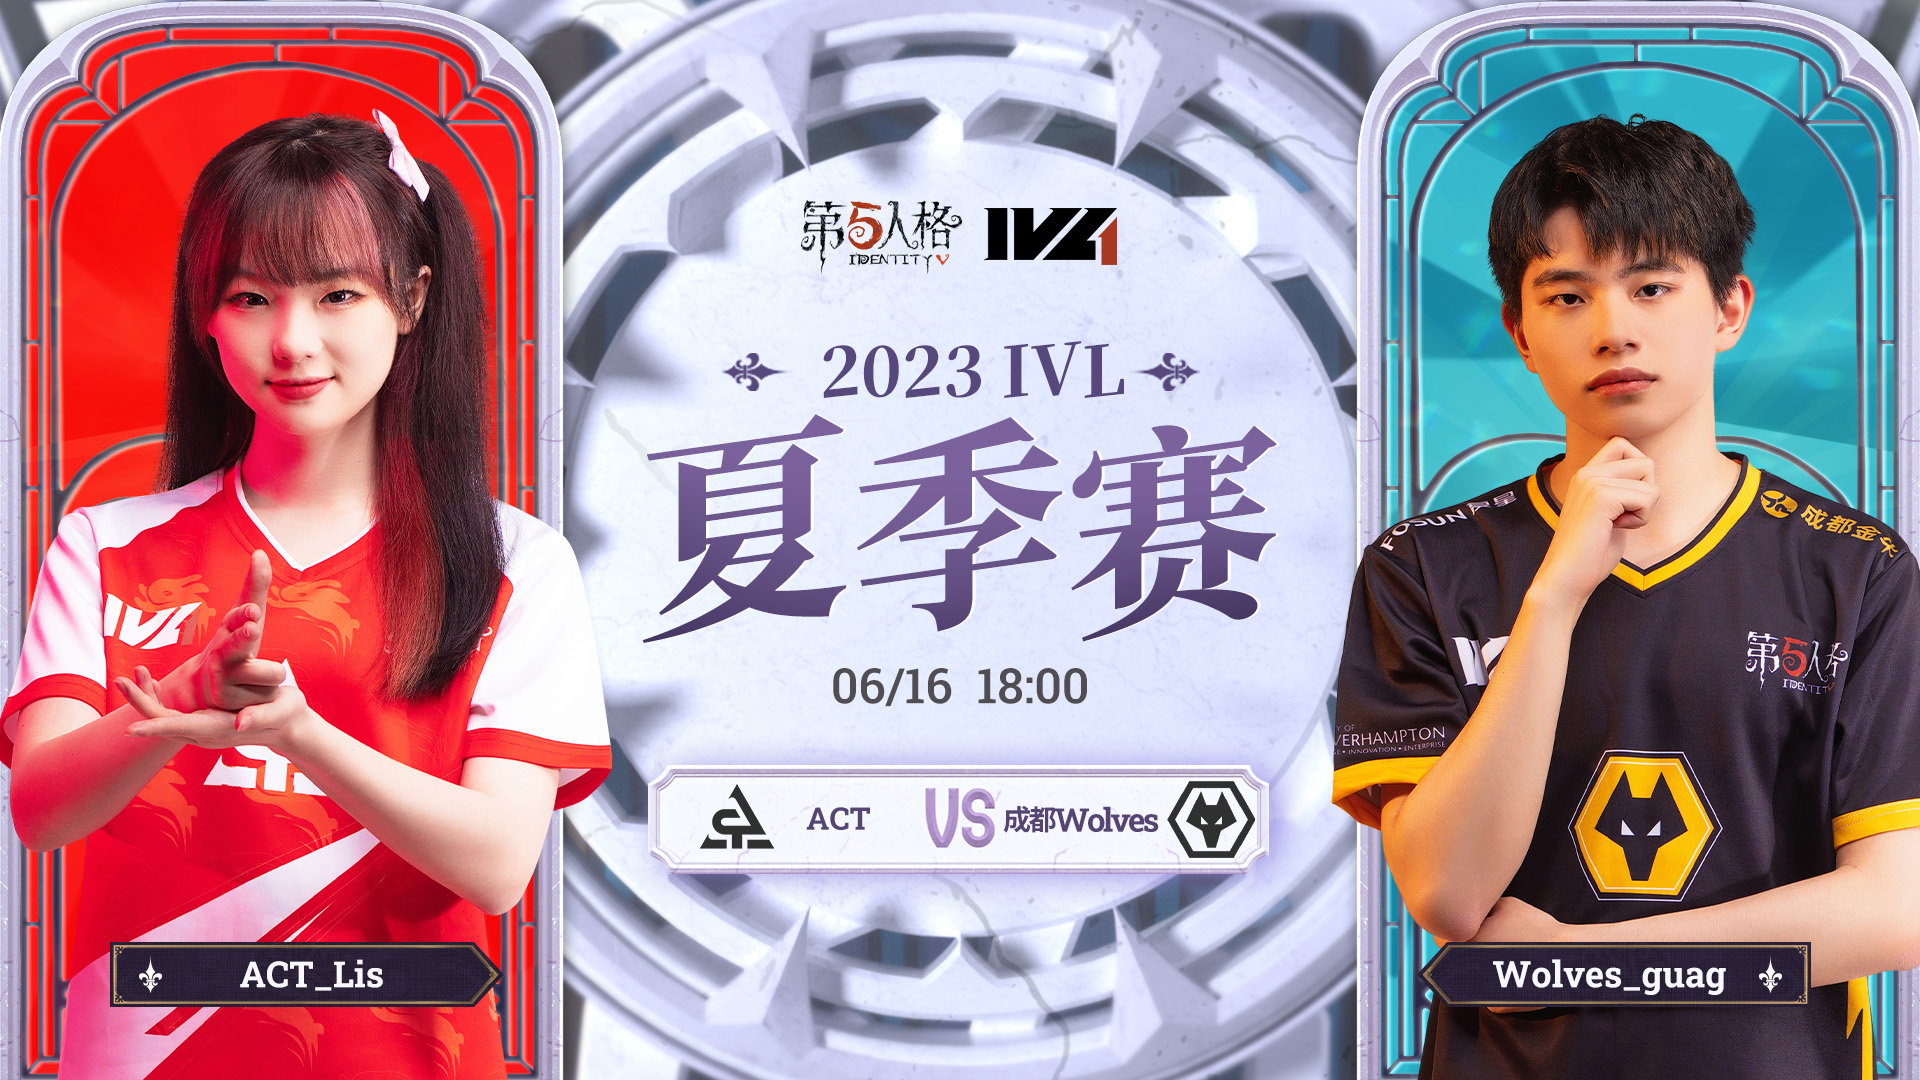 【2023IVL】夏季赛W2D1录像 ACT vs 成都Wolves